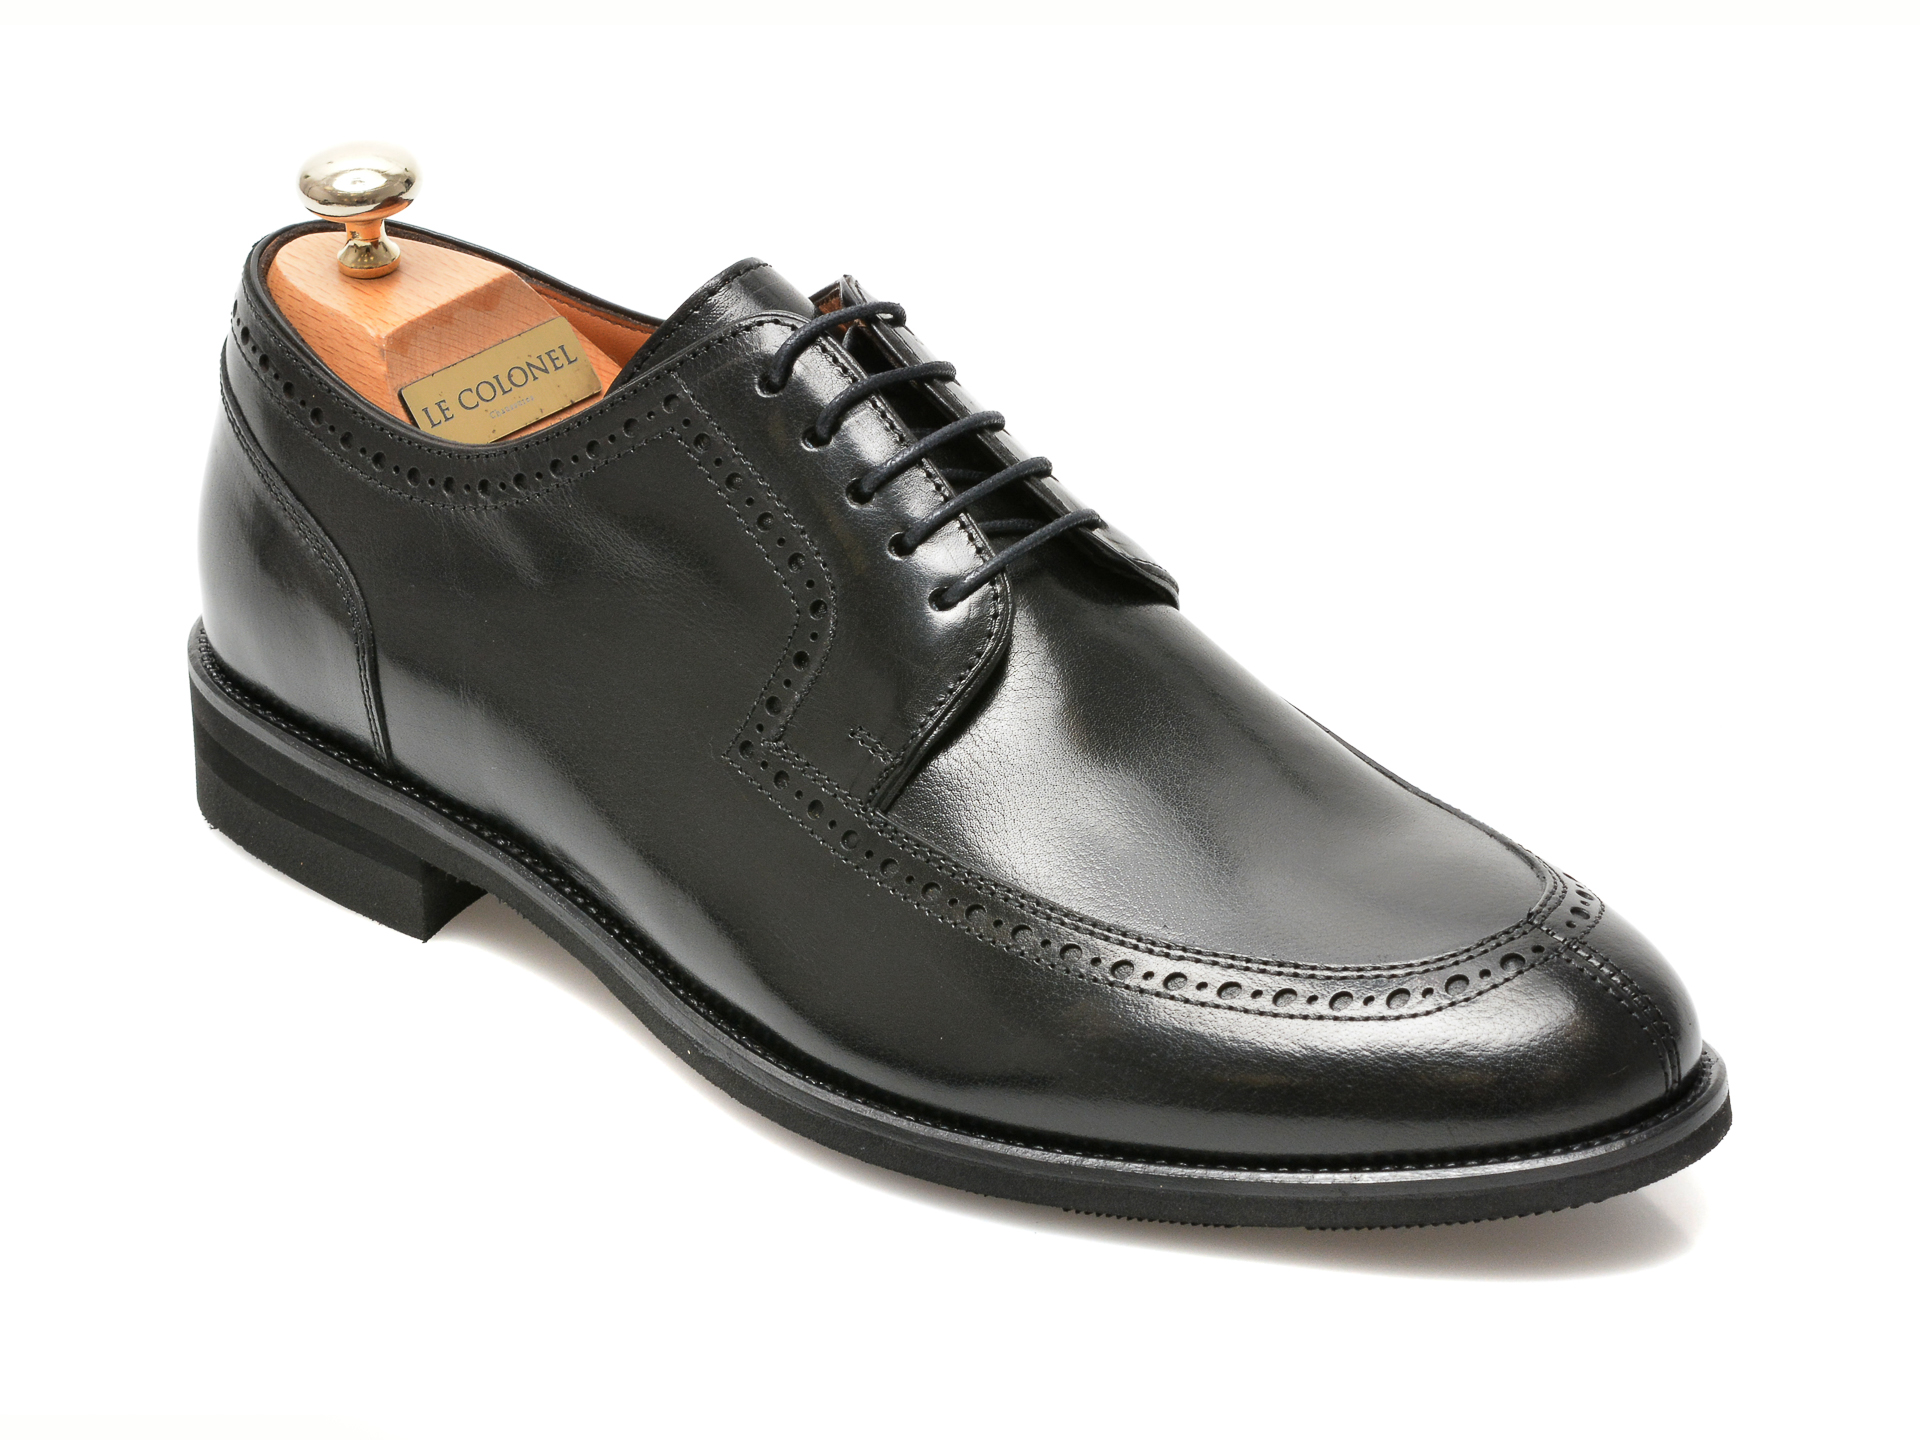 Pantofi LE COLONEL negri, 45279, din piele naturala Le Colonel imagine 2022 reducere